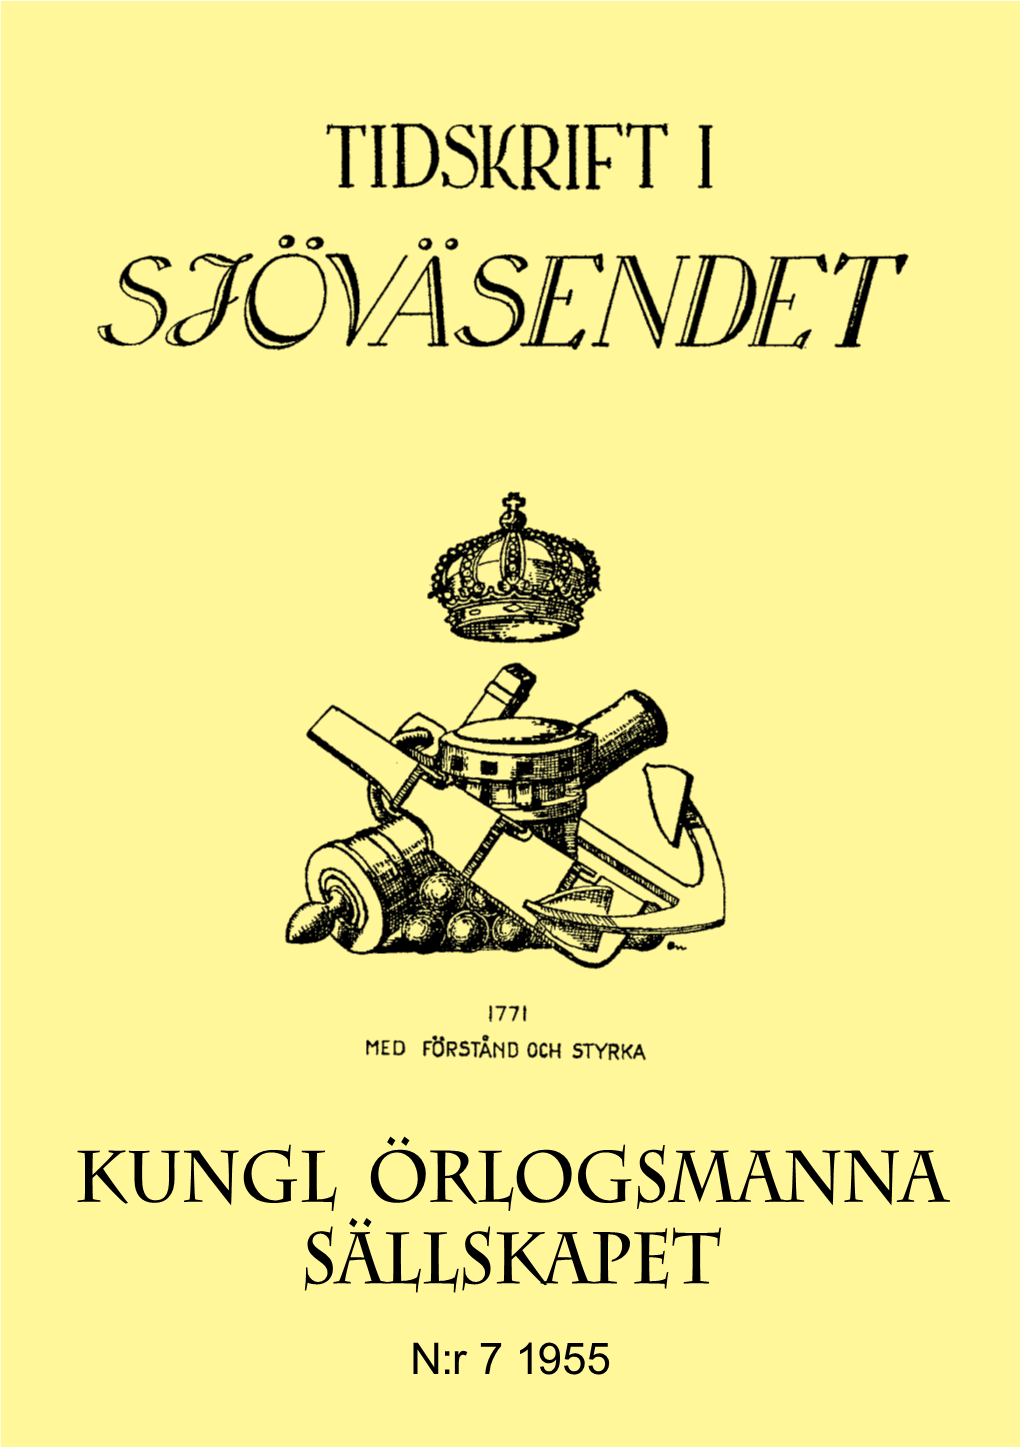 KUNGL ÖRLOGSMANNA SÄLLSKAPET N:R 7 1955 445